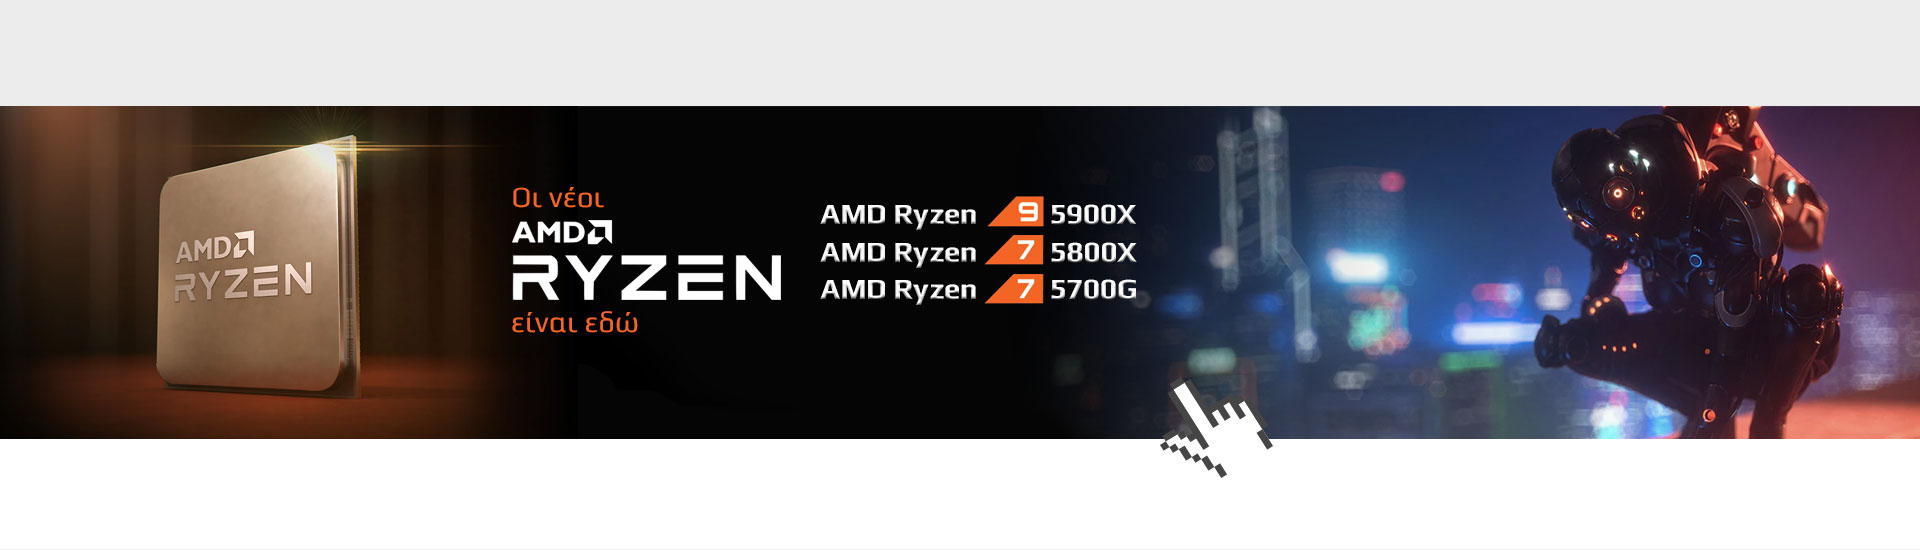 New AMD_en